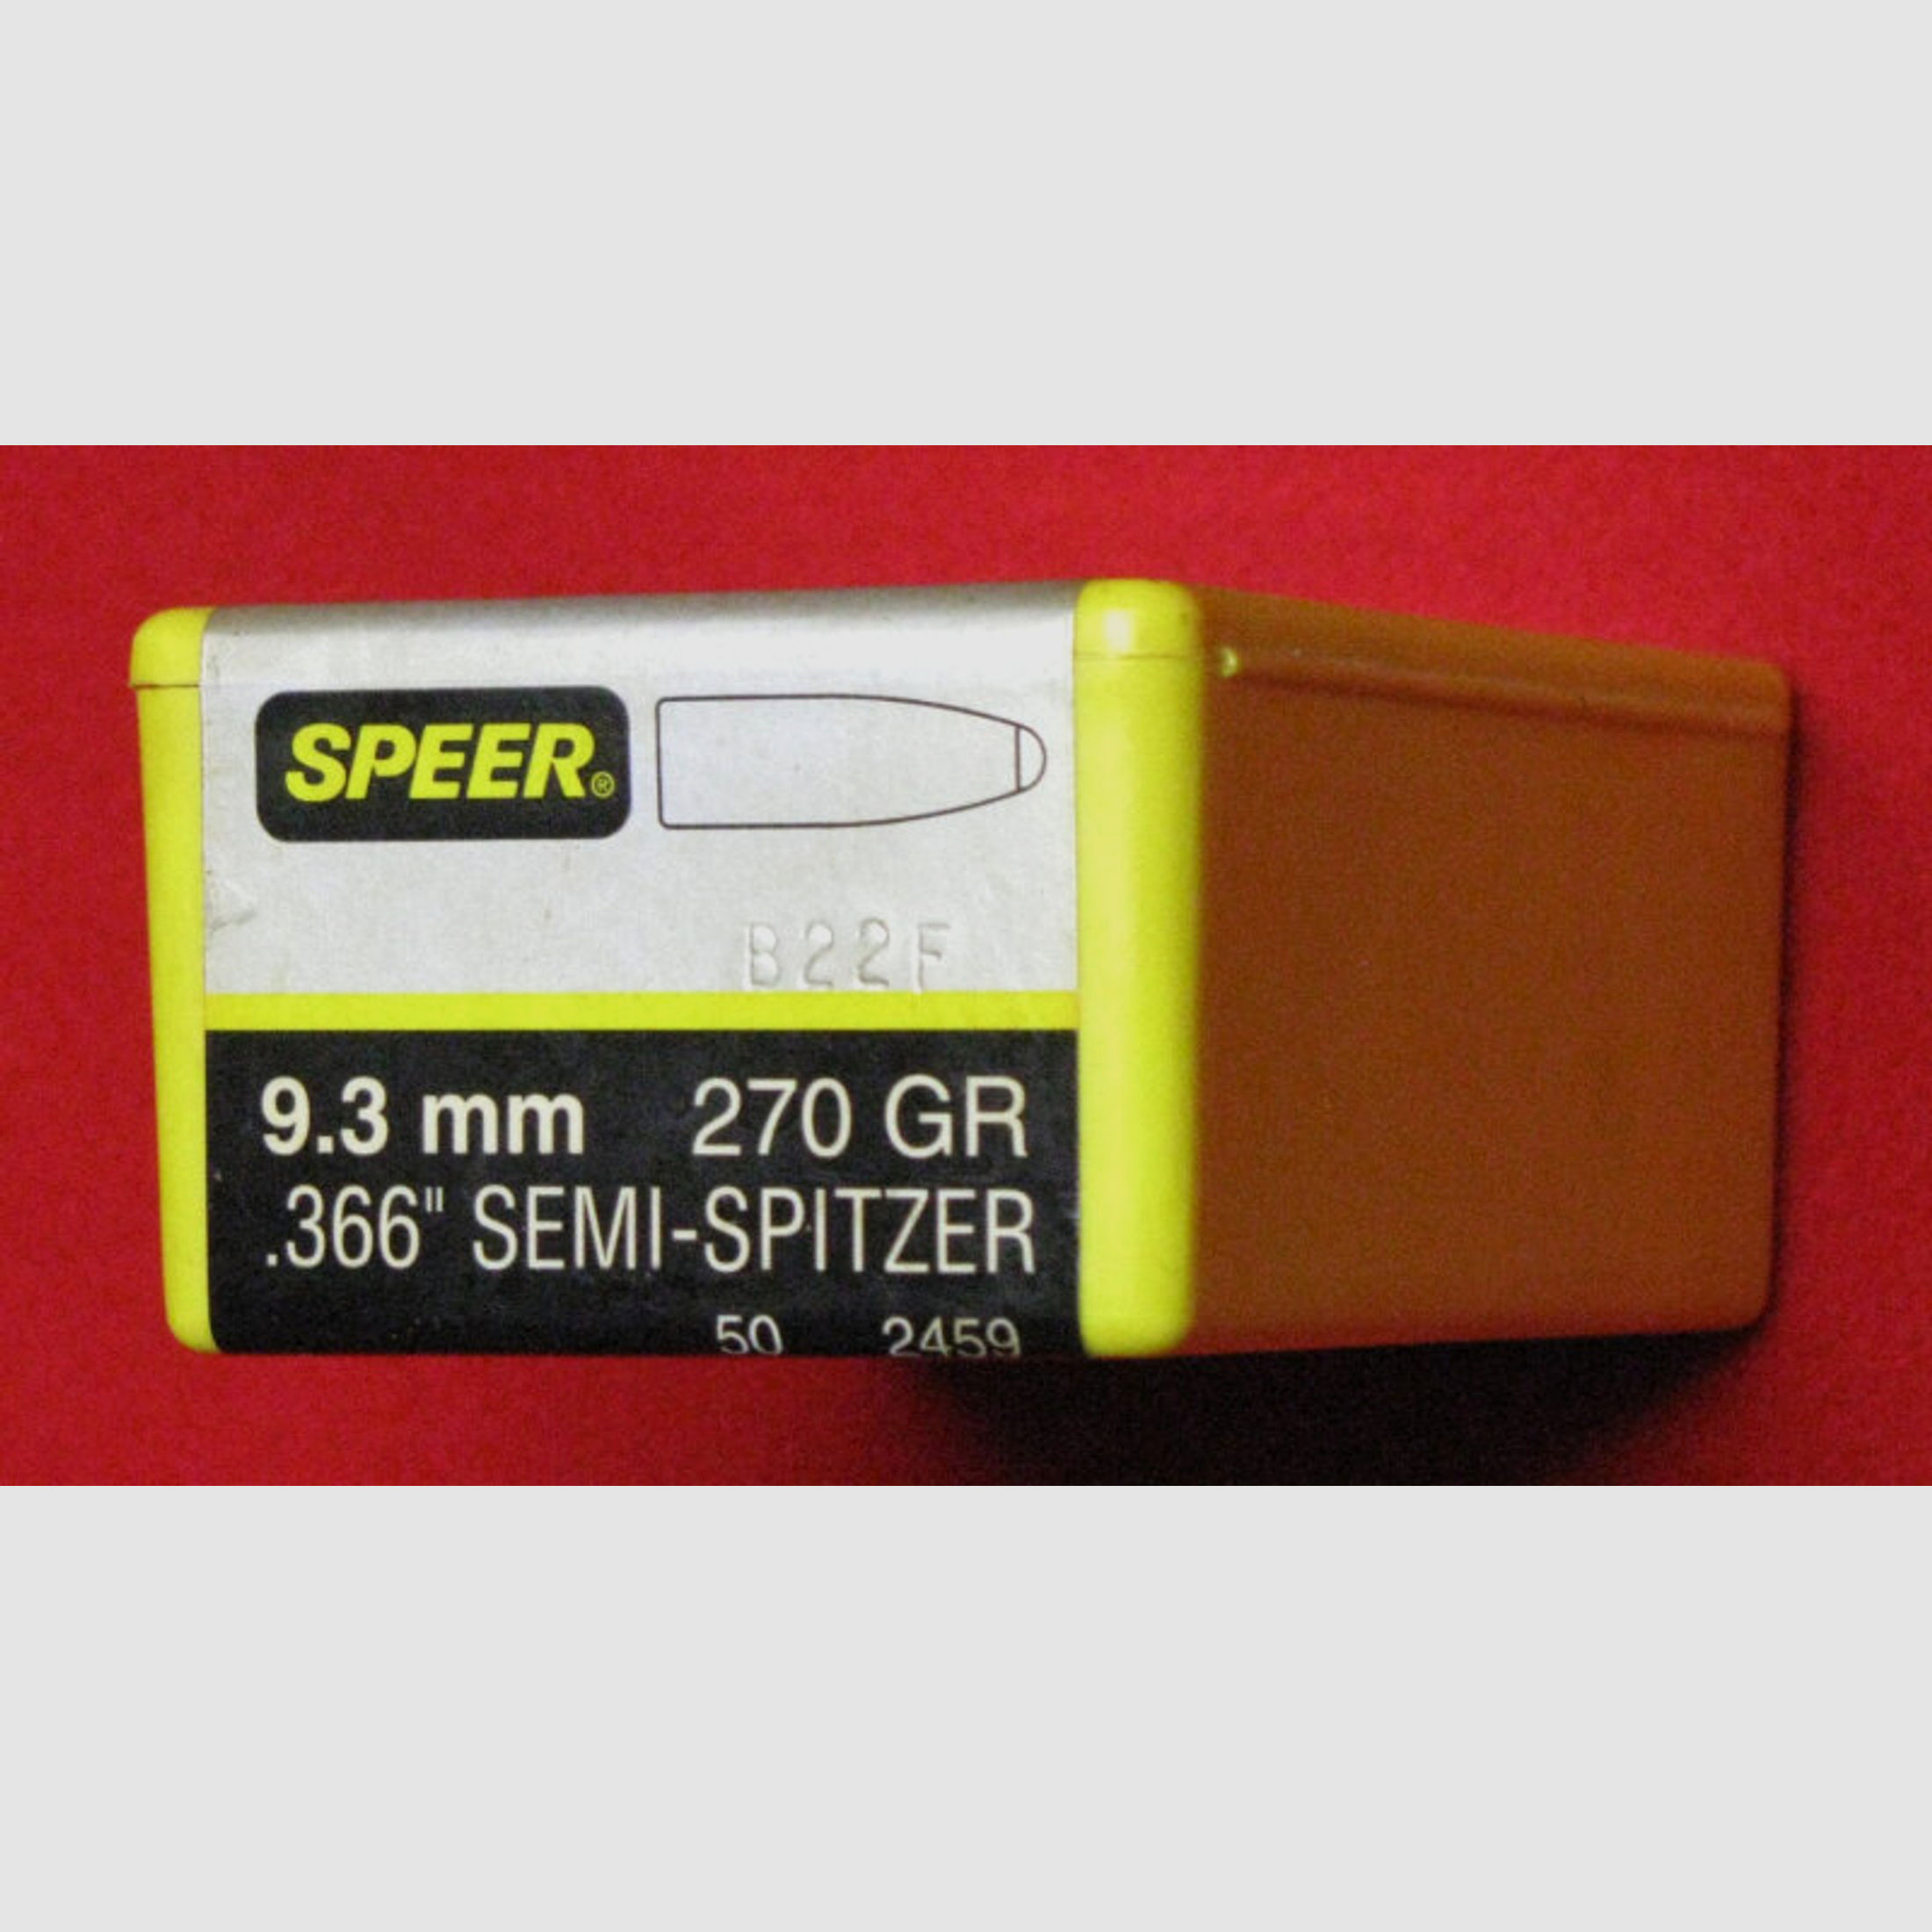 SPEER, 50 Geschosse 9,3mm / 270GR / 366 SEMI - SPITZER, original verpackt, Bitte ansehen